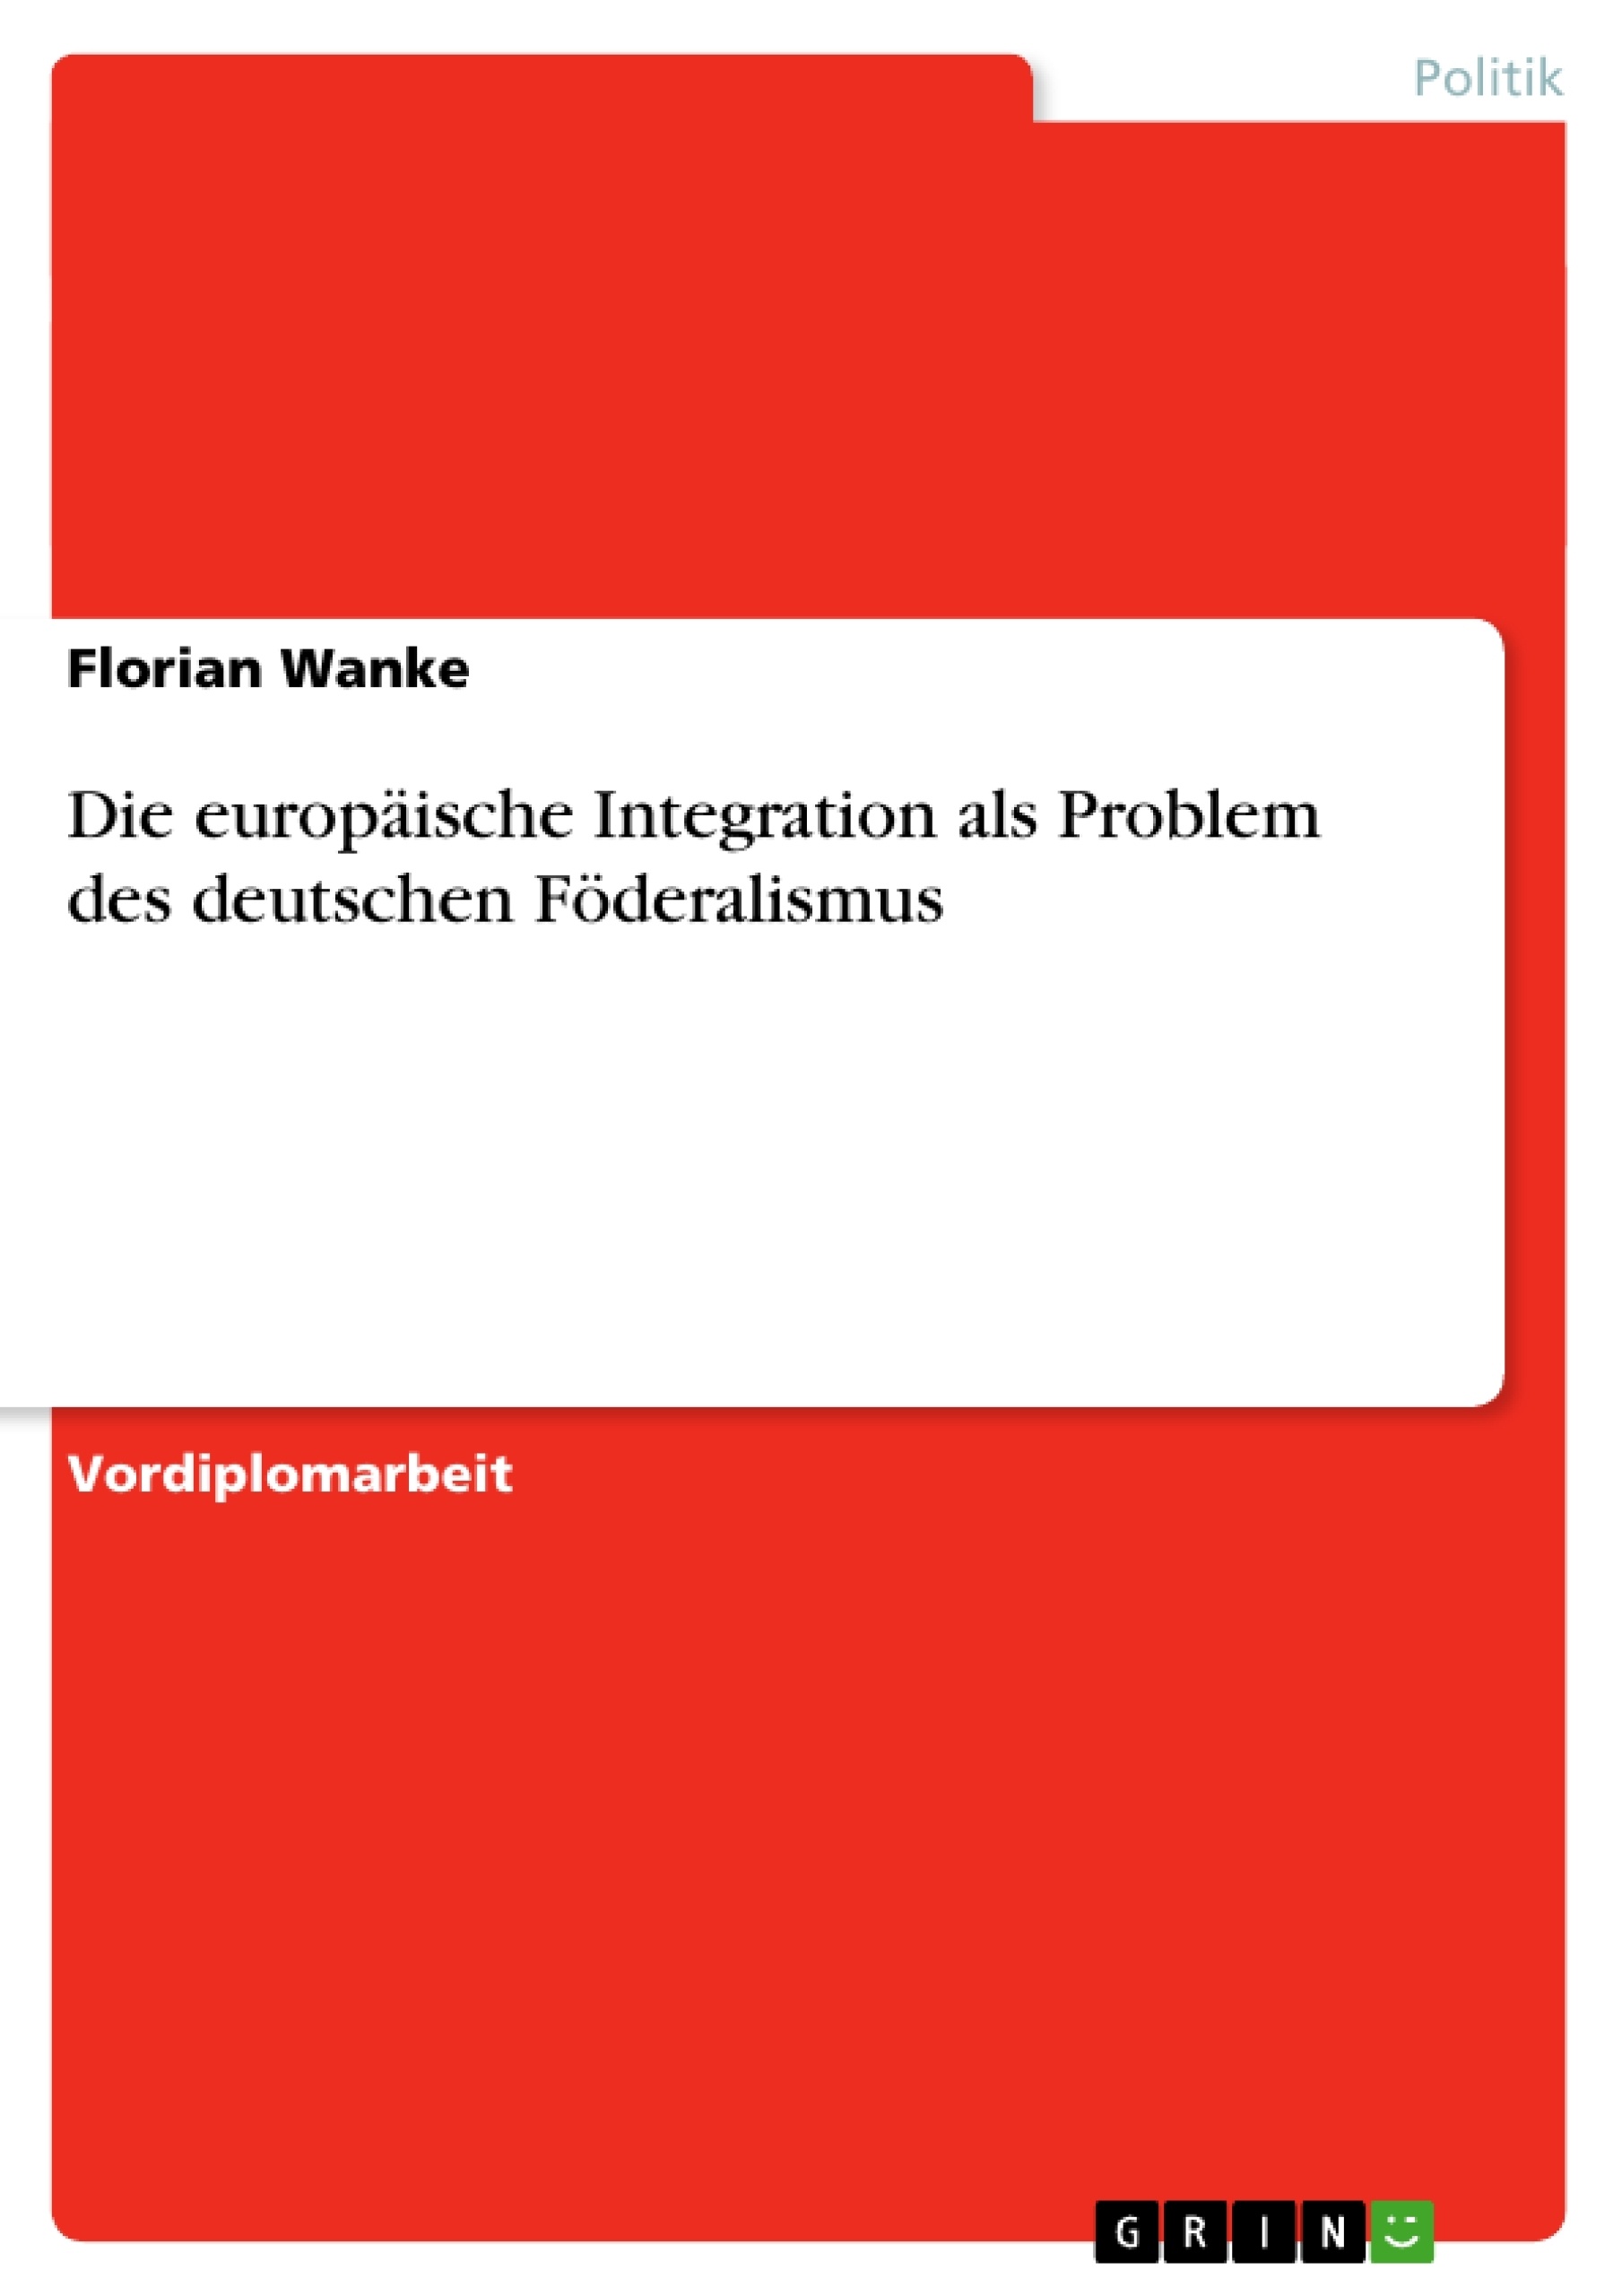 Title: Die europäische Integration als Problem des deutschen Föderalismus